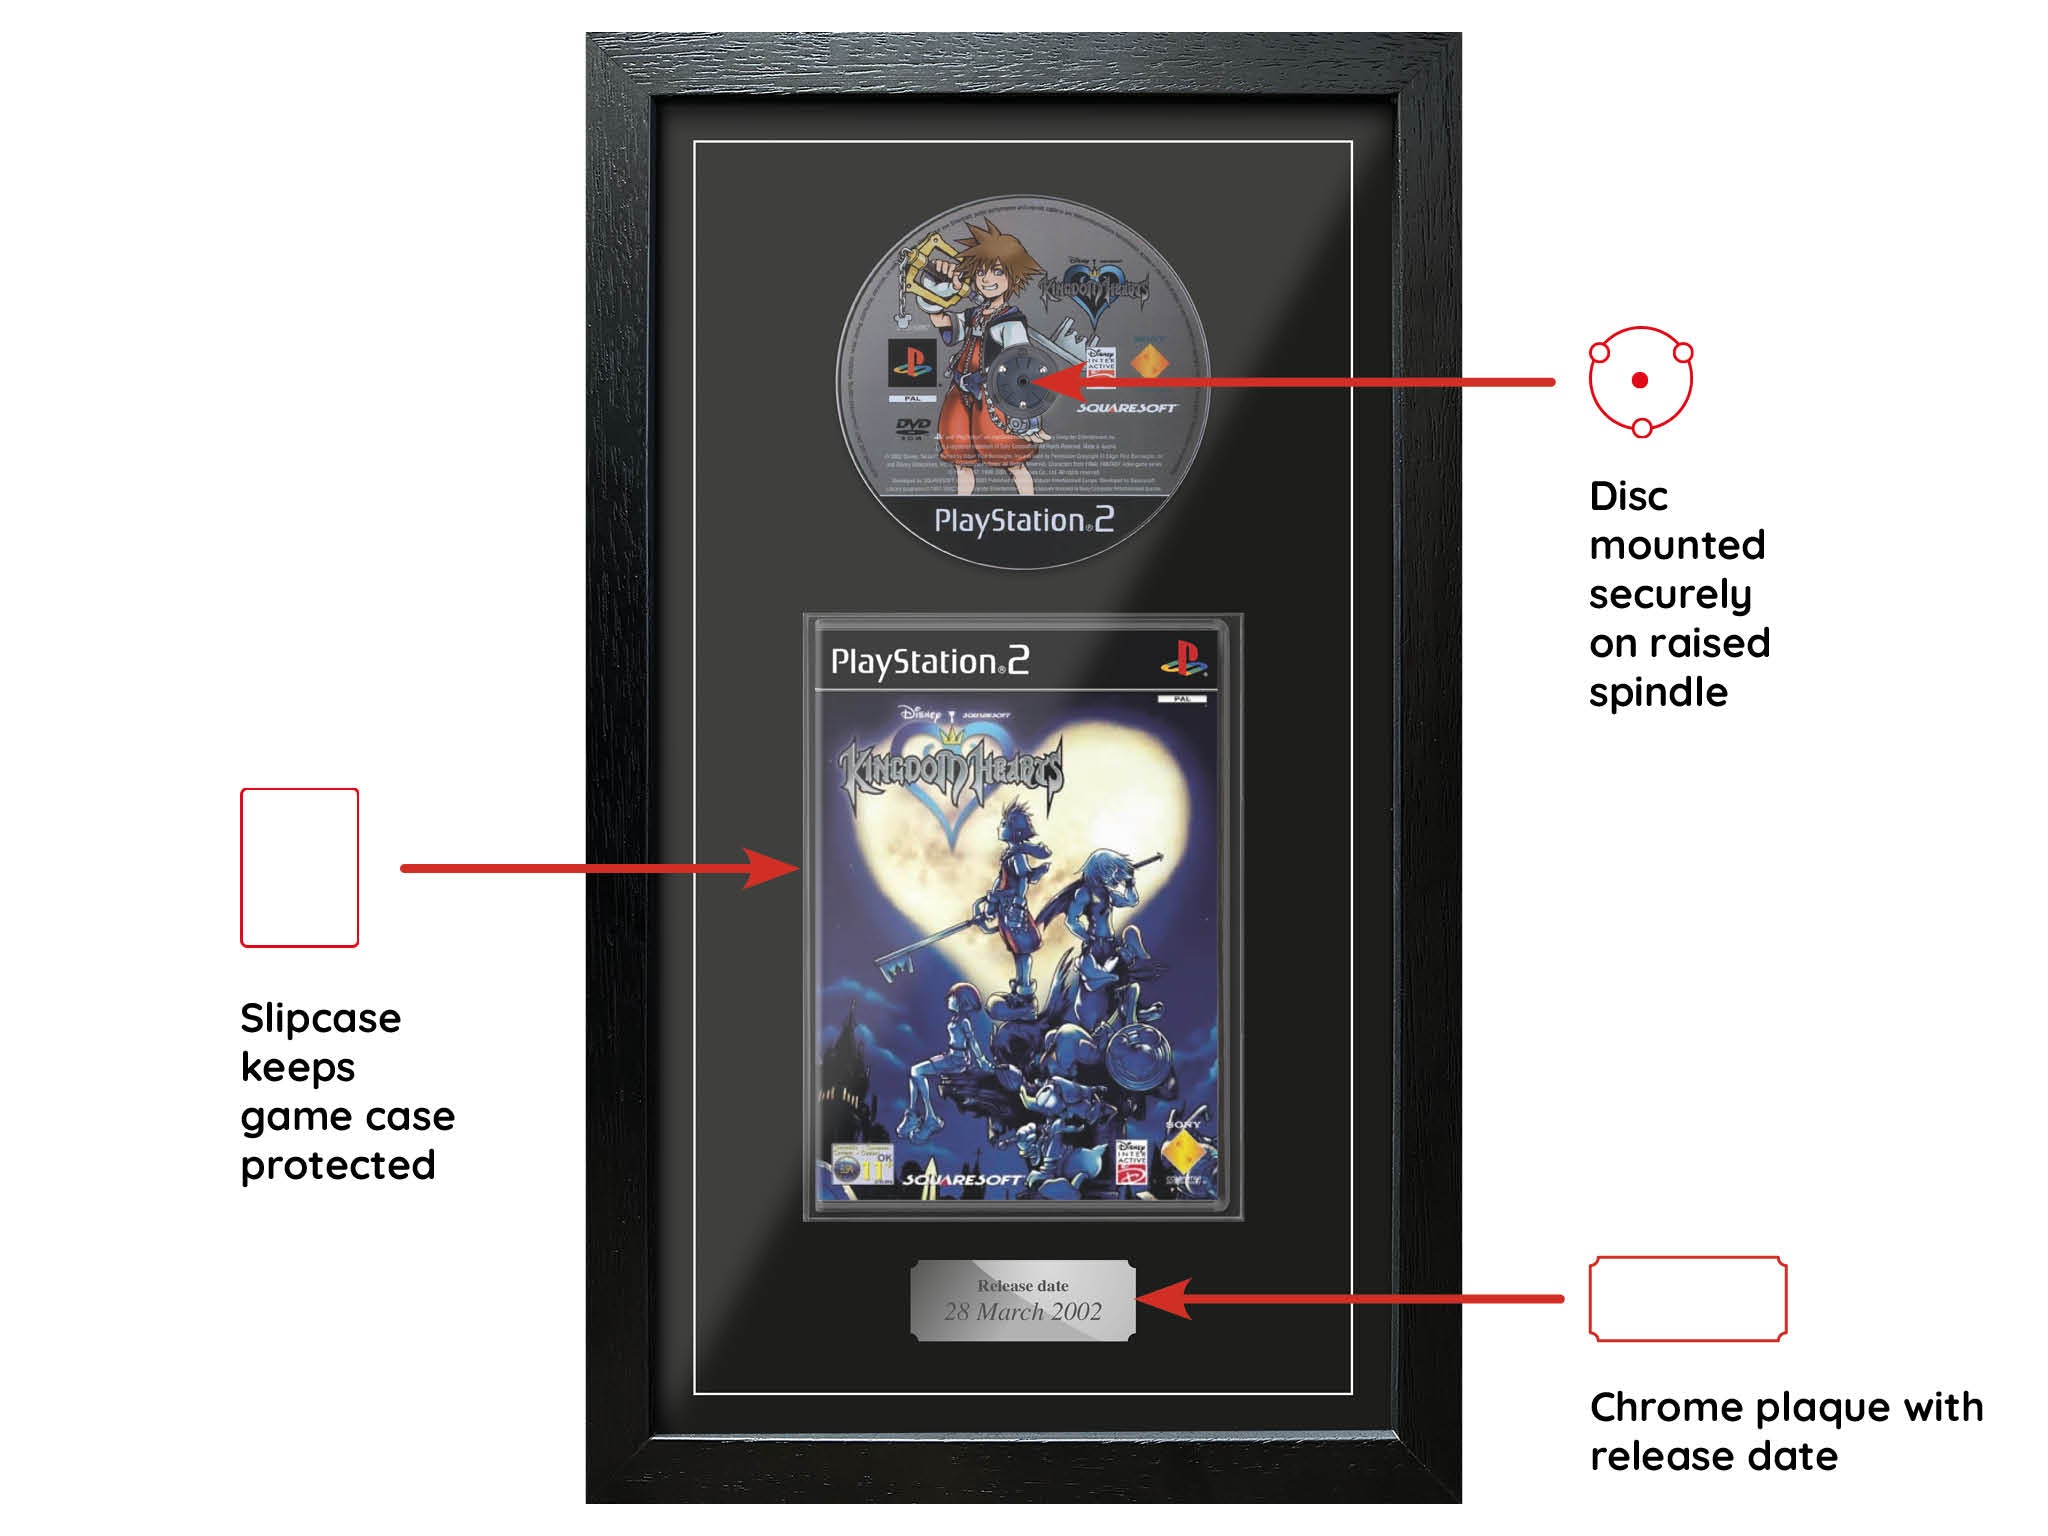 Kingdom Hearts (Exhibition Range) Framed Game - Frame-A-Game